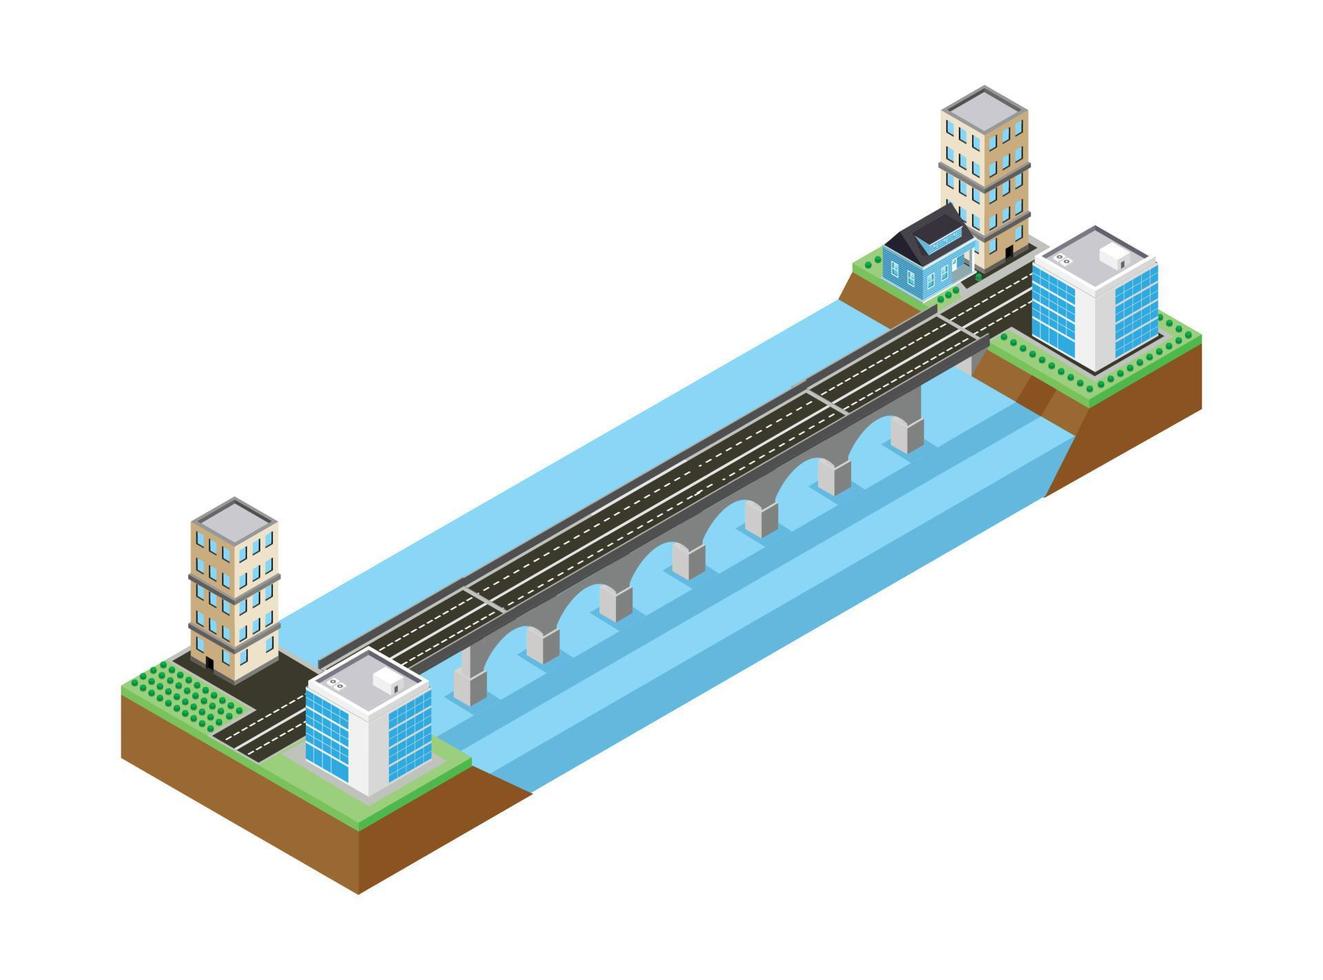 ponte isométrica conectando 2 cidades. ilustração vetorial isométrica adequada para diagramas, infográficos e outros ativos gráficos vetor